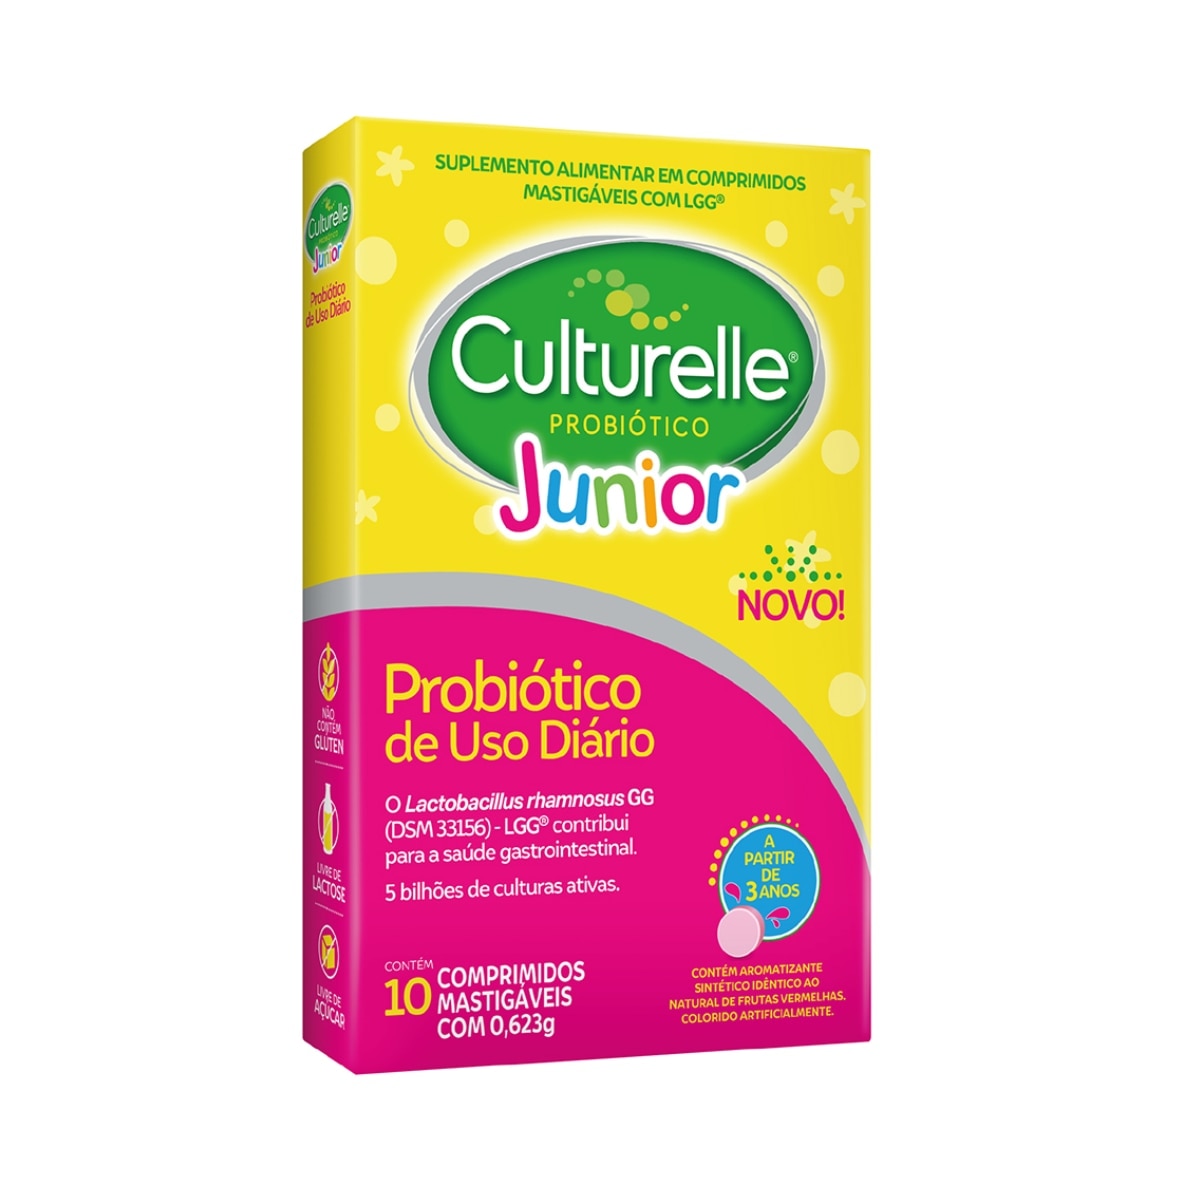 Culturelle Probiotico Junior 10 Comprimidos Mastigaveis